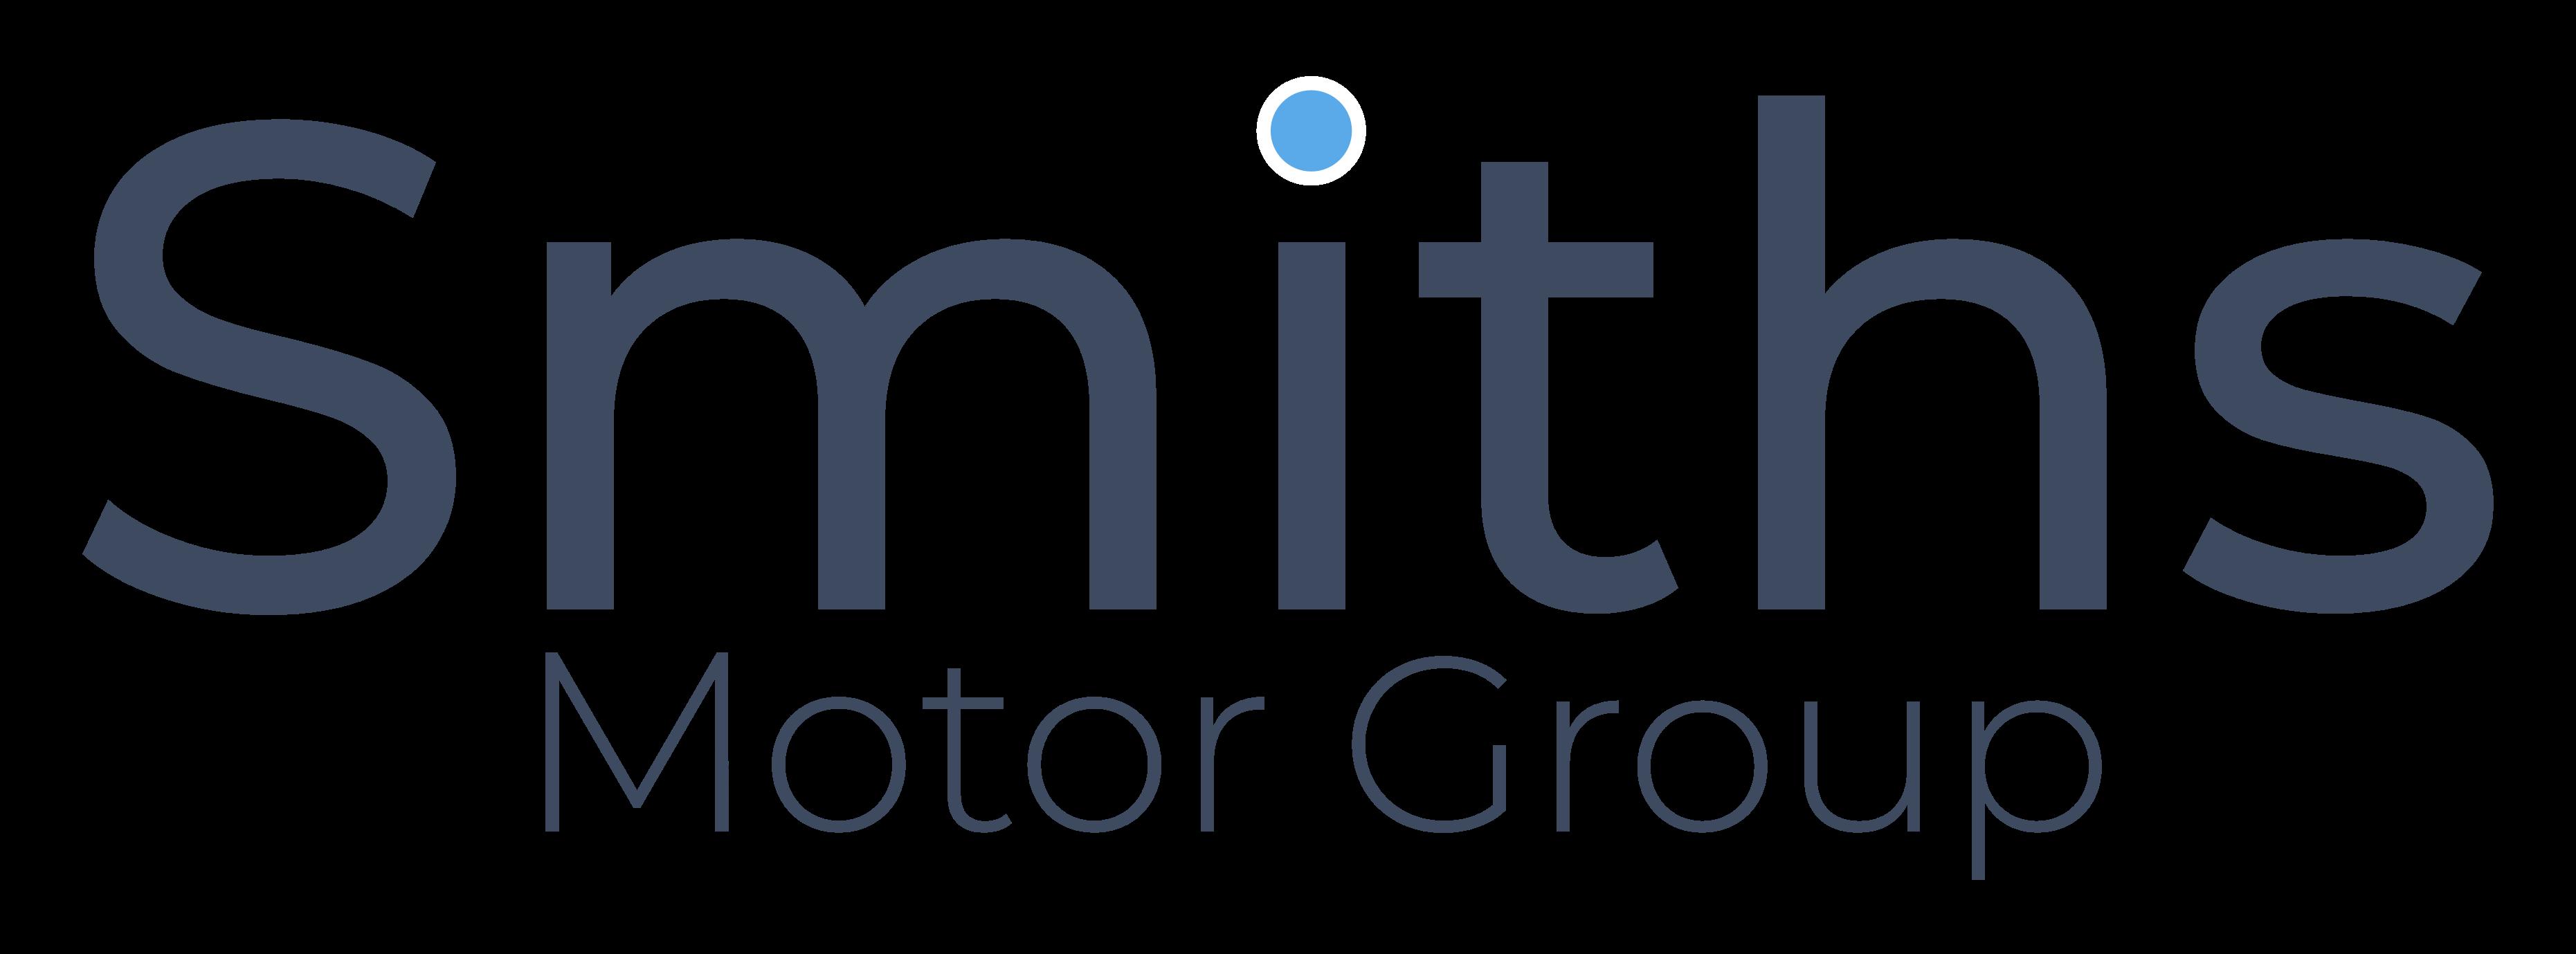 Smiths Motor Group Renault Peterborough